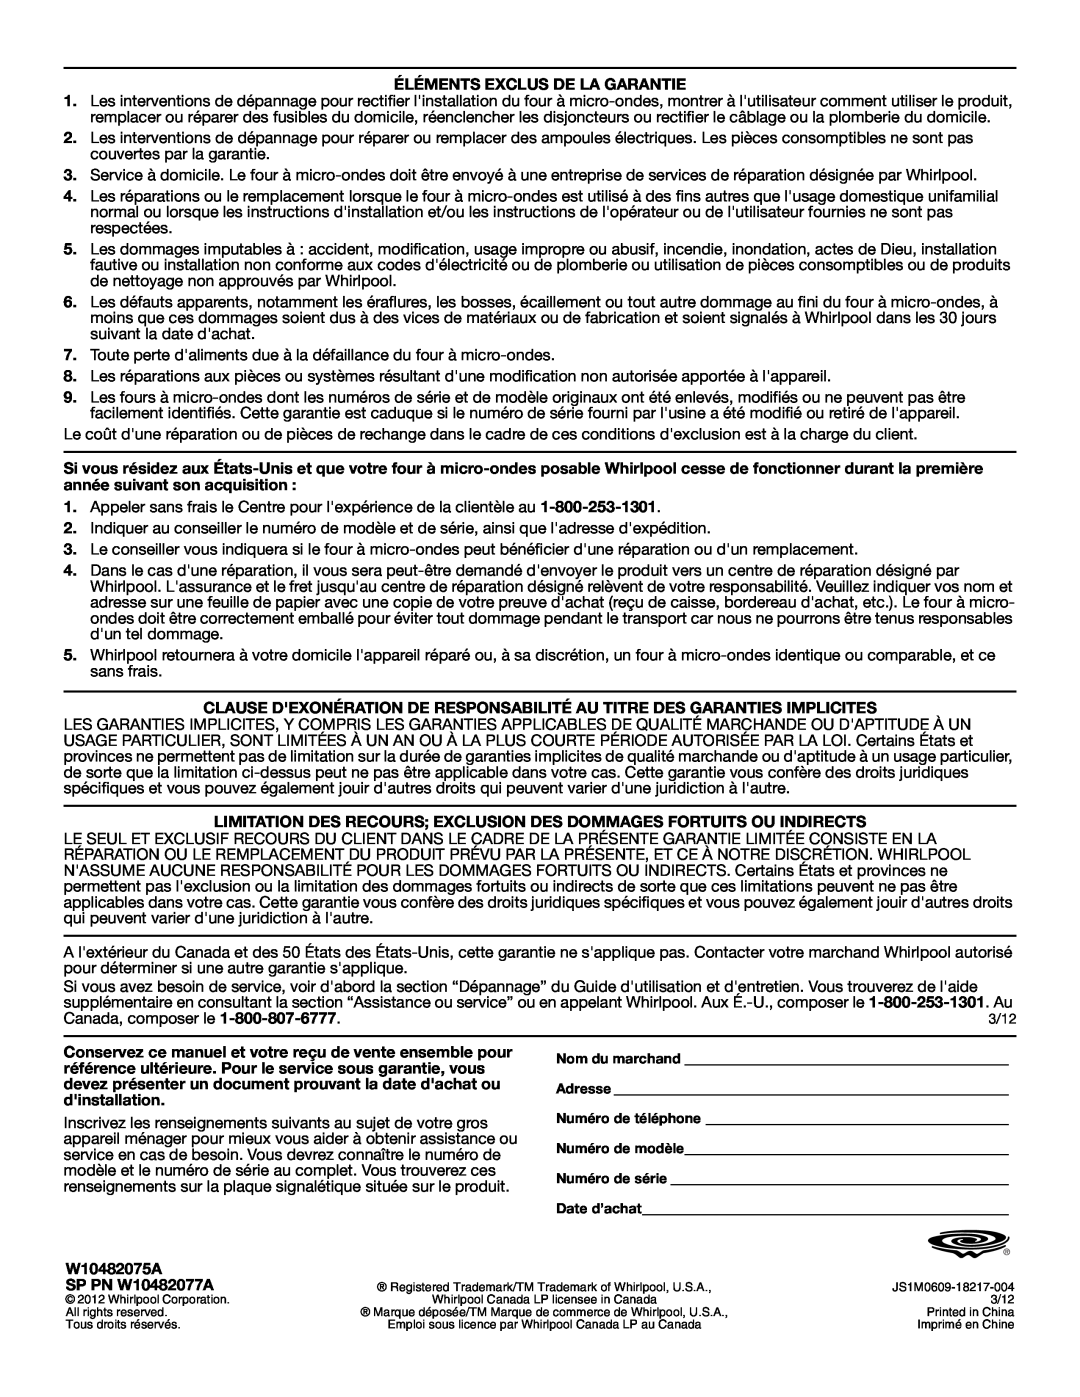 Whirlpool WMC10007 Éléments Exclus De La Garantie, Limitation Des Recours Exclusion Des Dommages Fortuits Ou Indirects 